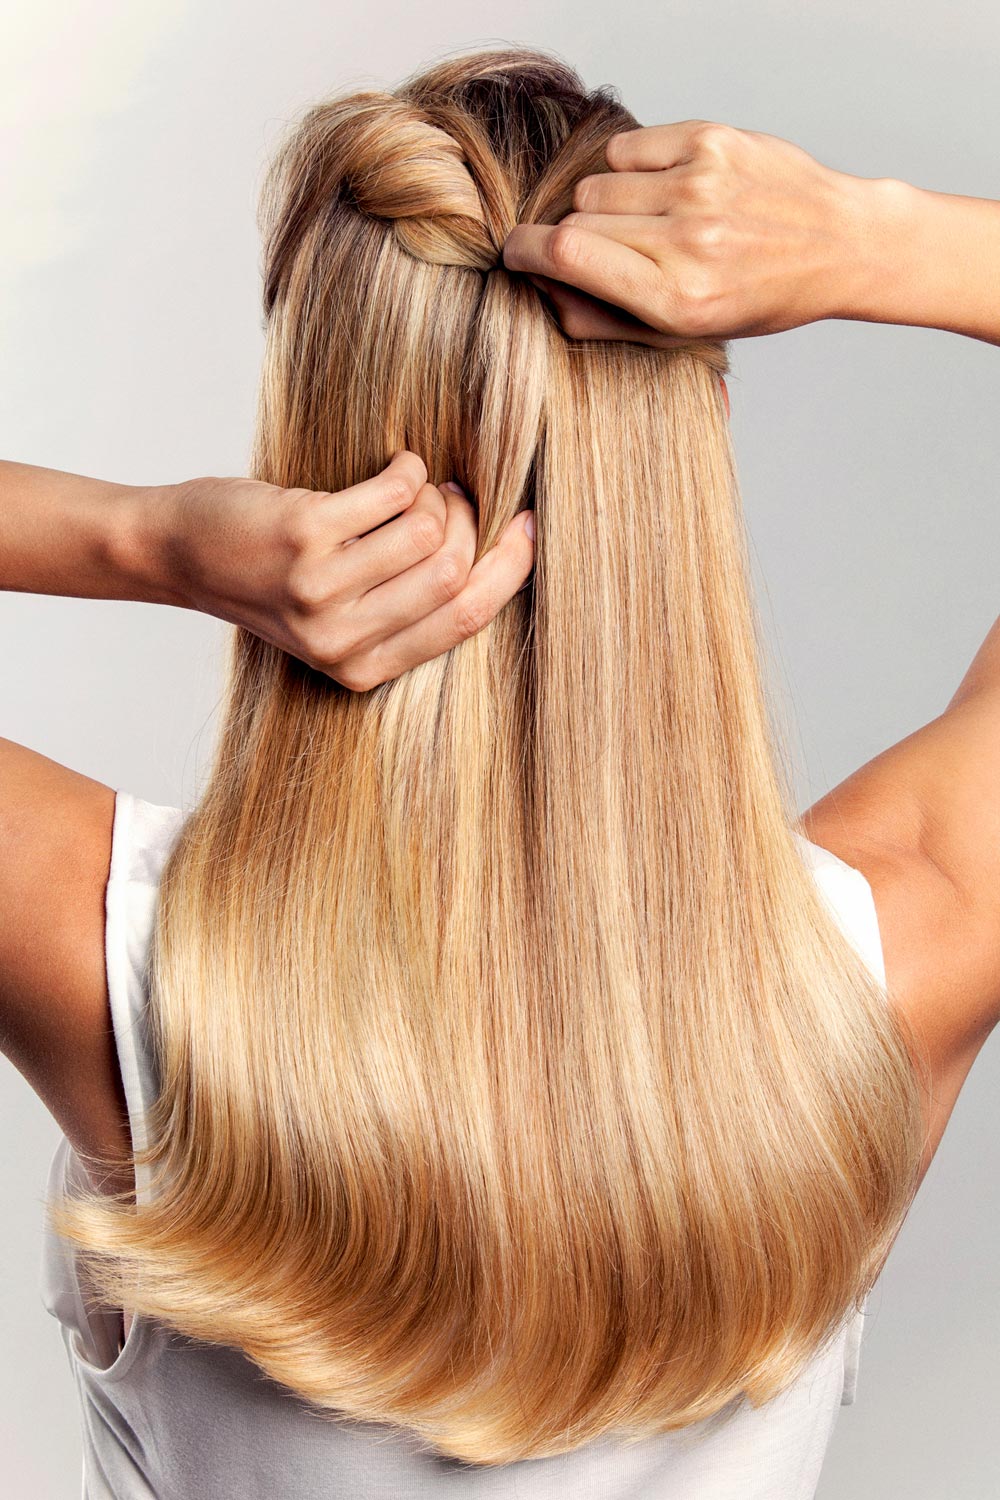 frisur lange haare hochstecken | lucycolegisele site